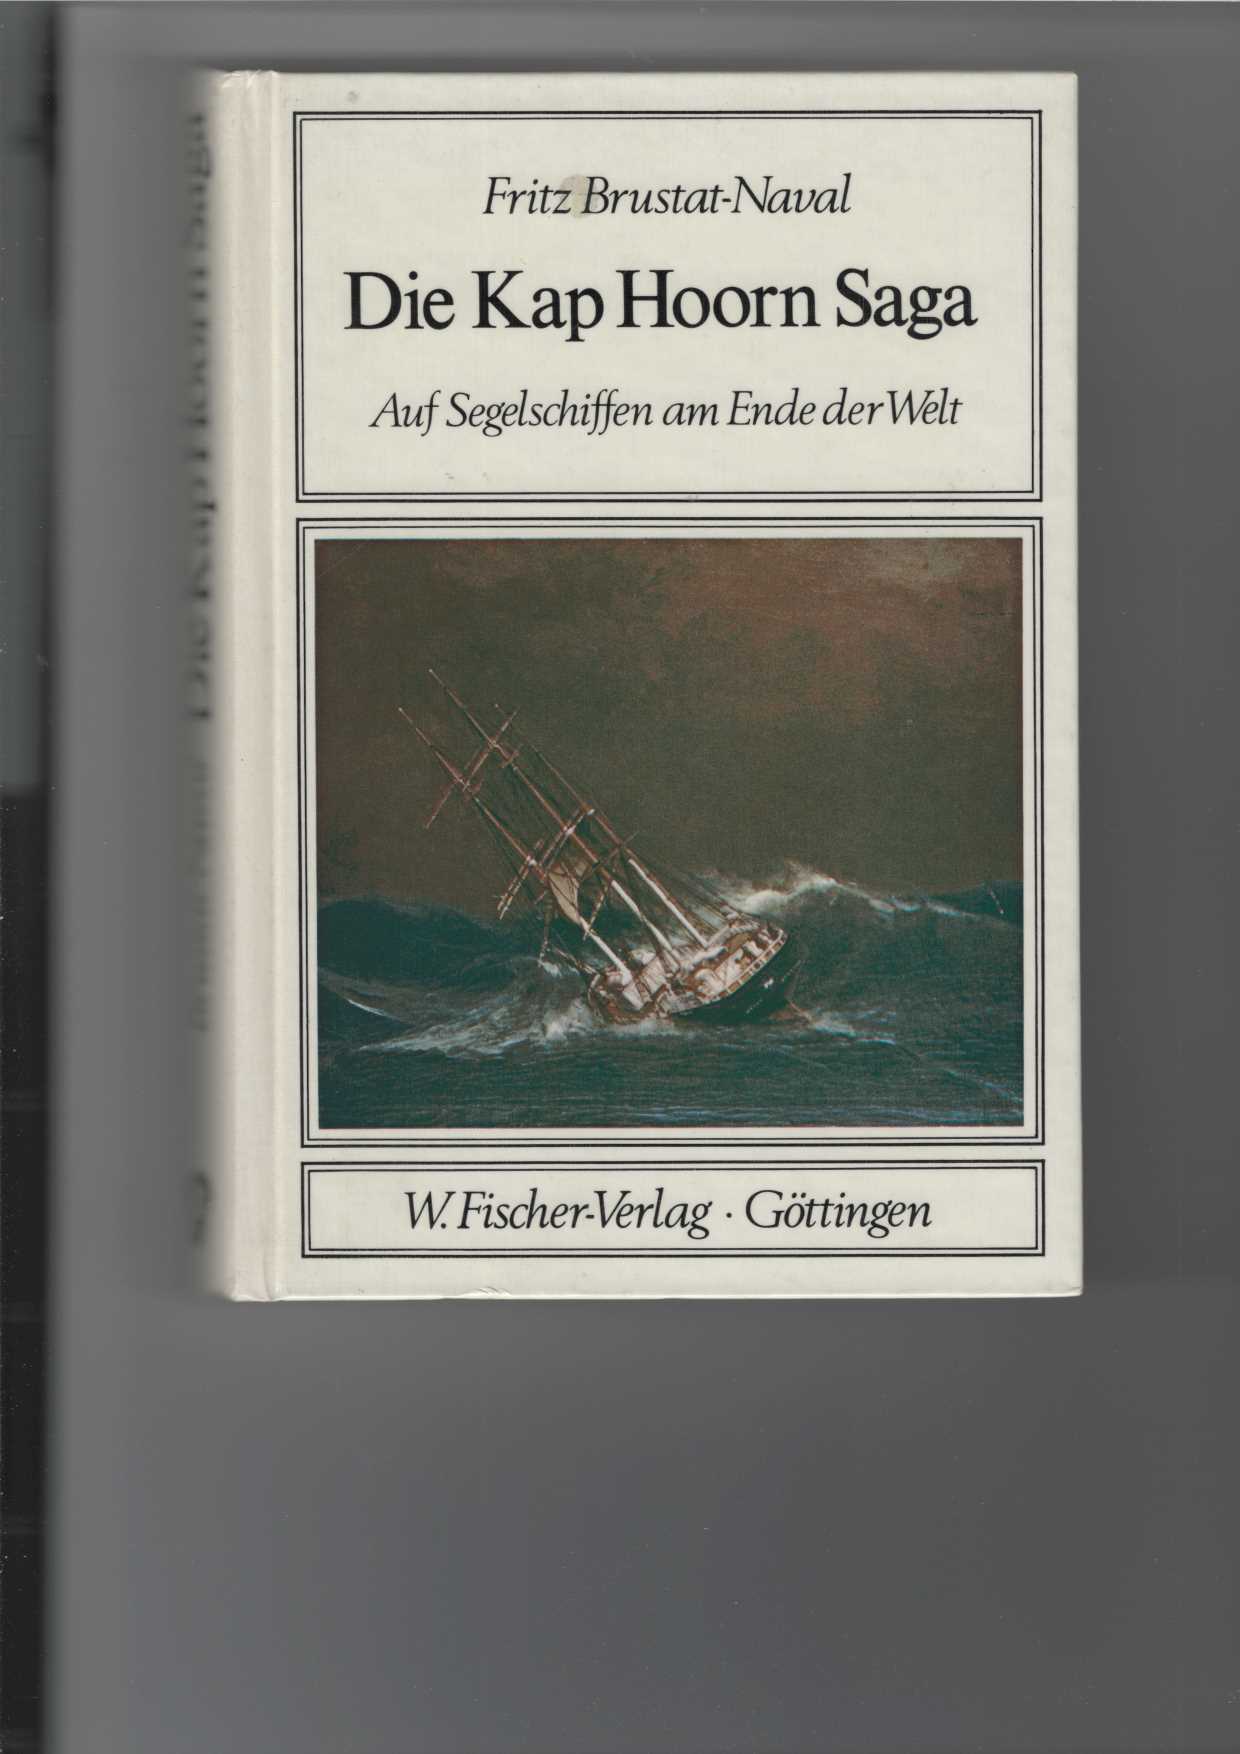 Die Kap Hoorn Saga. Auf Segelschiffen am Ende der Welt. Mit Zeichnungen von Kurt Schmischke und Fotos. - Brustat-Naval, Fritz